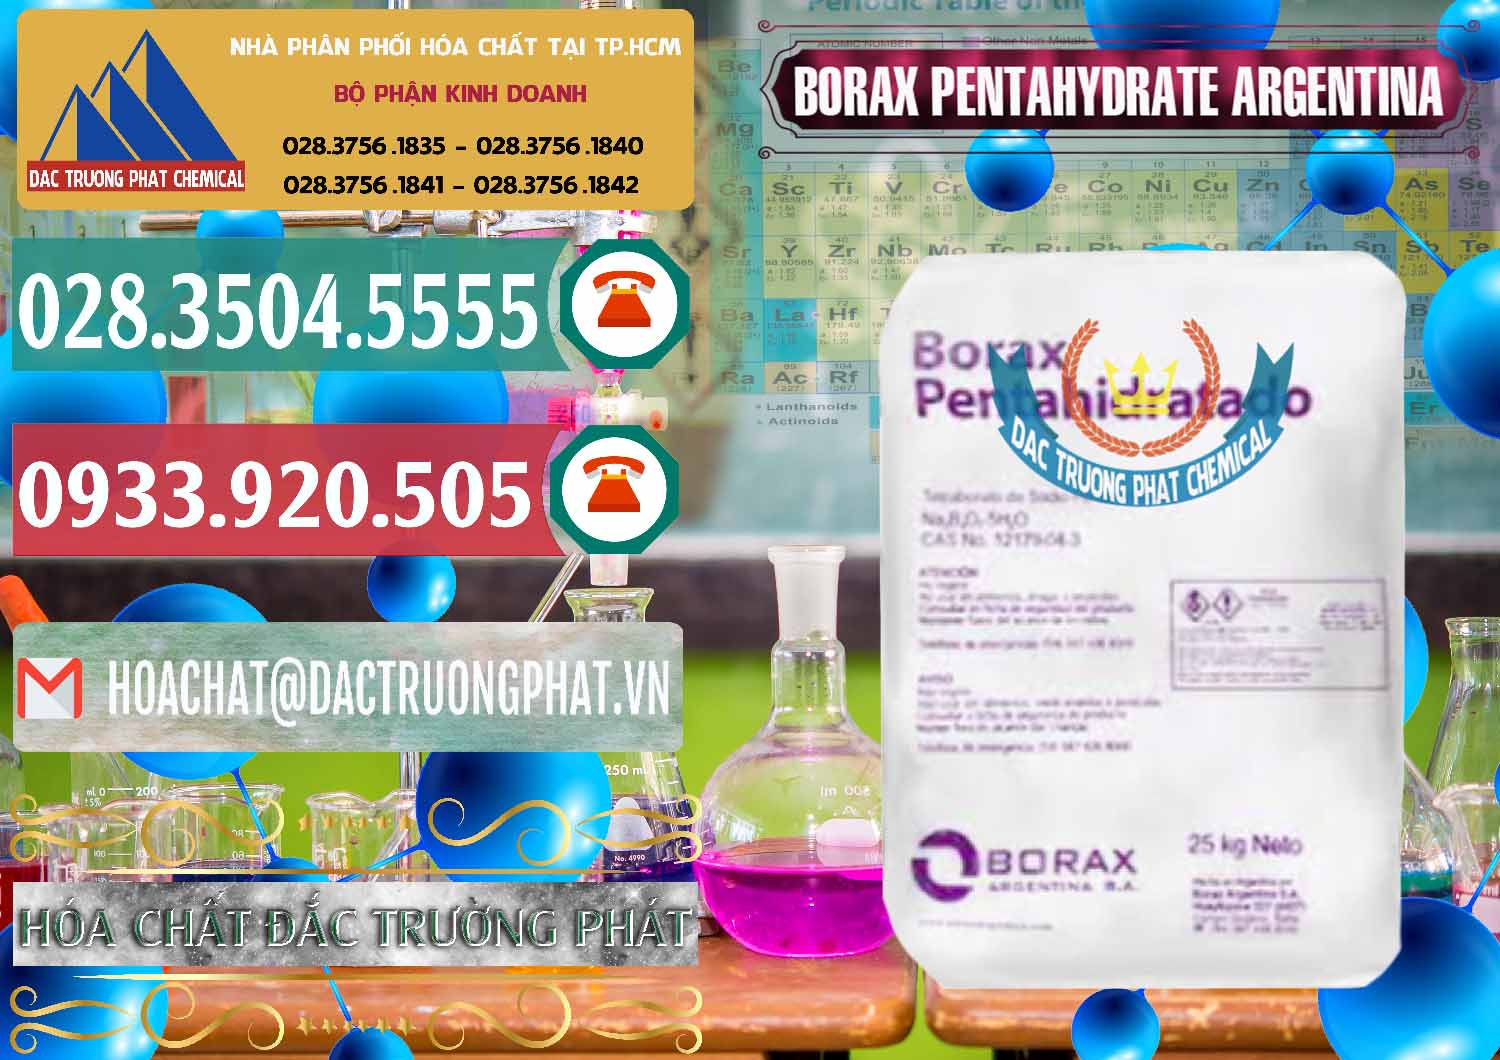 Bán - cung cấp Borax Pentahydrate Argentina - 0447 - Chuyên cung ứng - phân phối hóa chất tại TP.HCM - muabanhoachat.vn